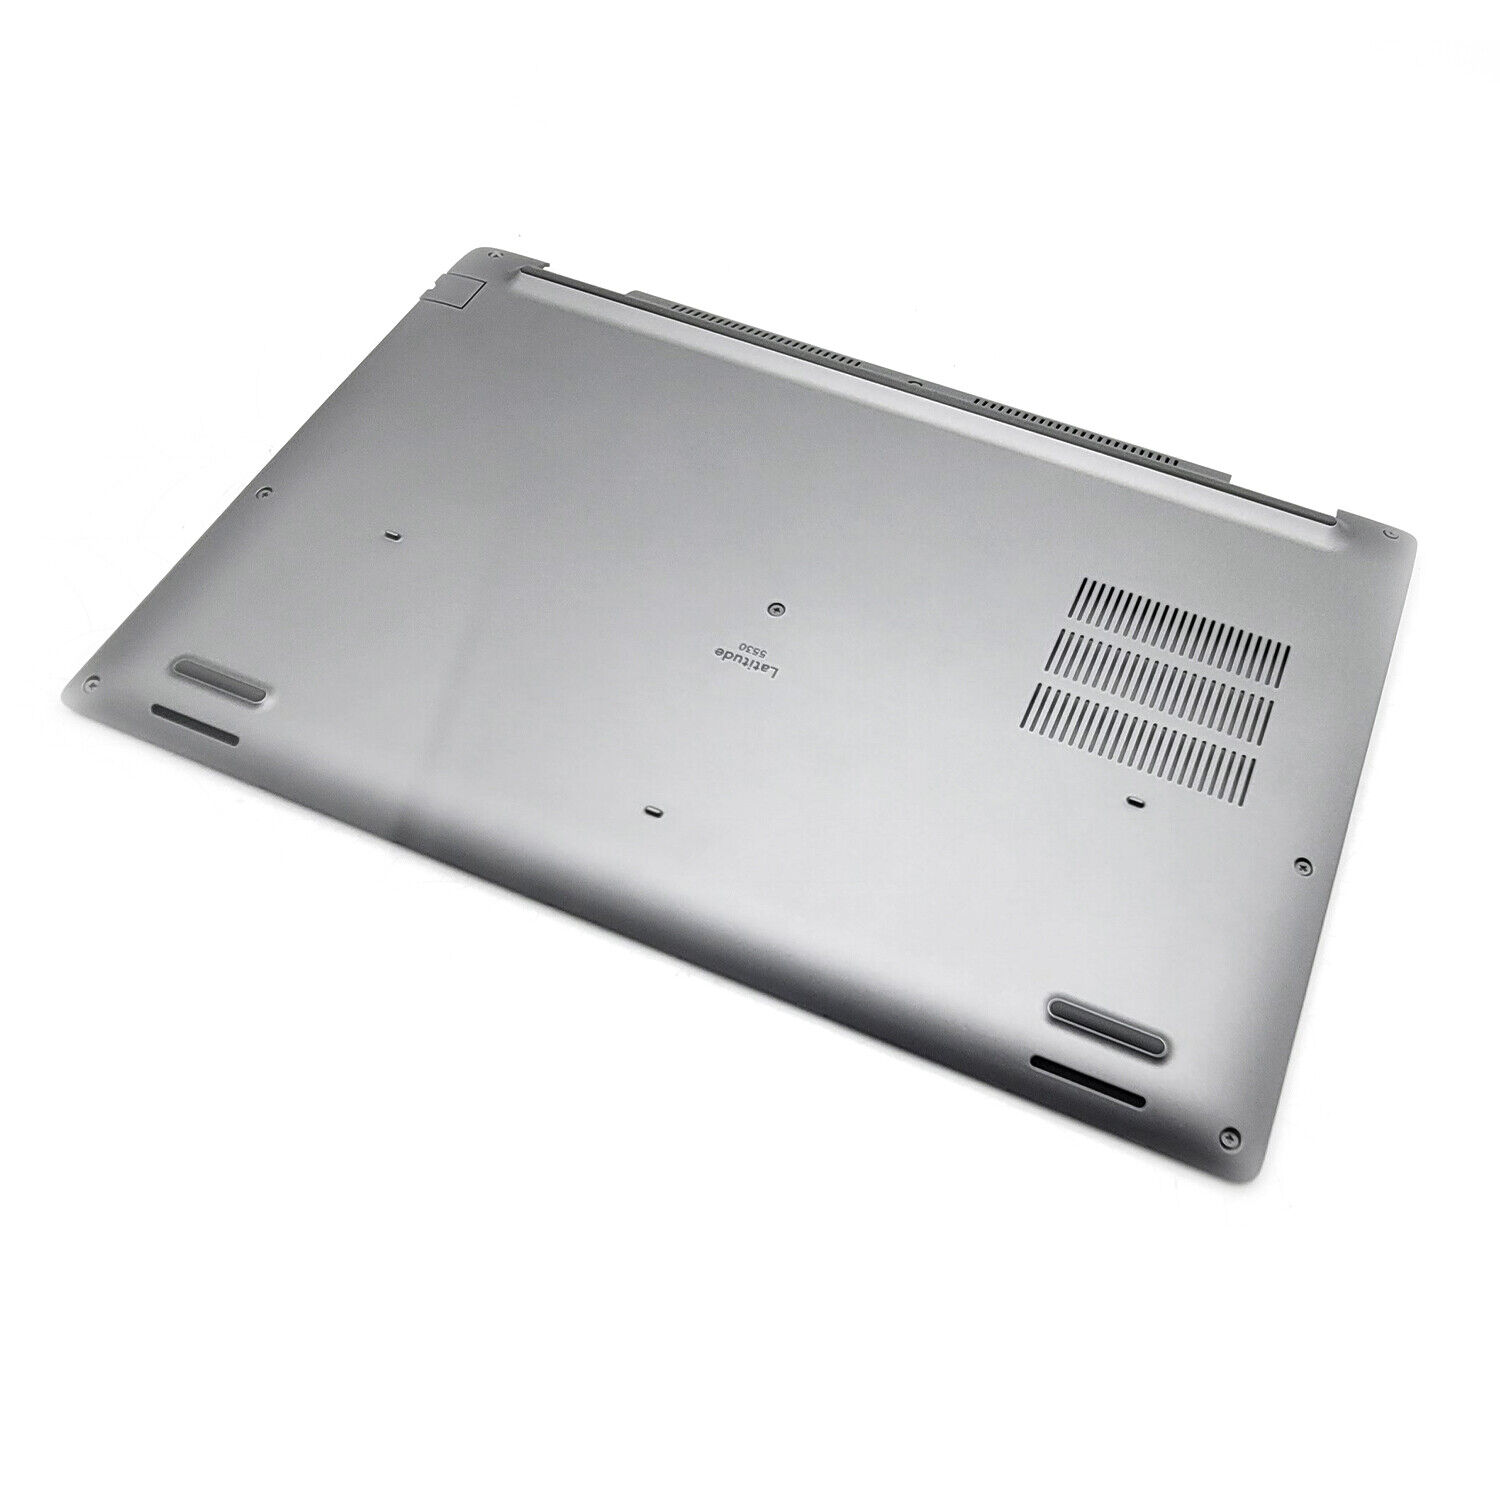 New Silver Lower Bottom Cover Case For Dell Latitude 5530 E5530 0VKCX6 VKCX6 US